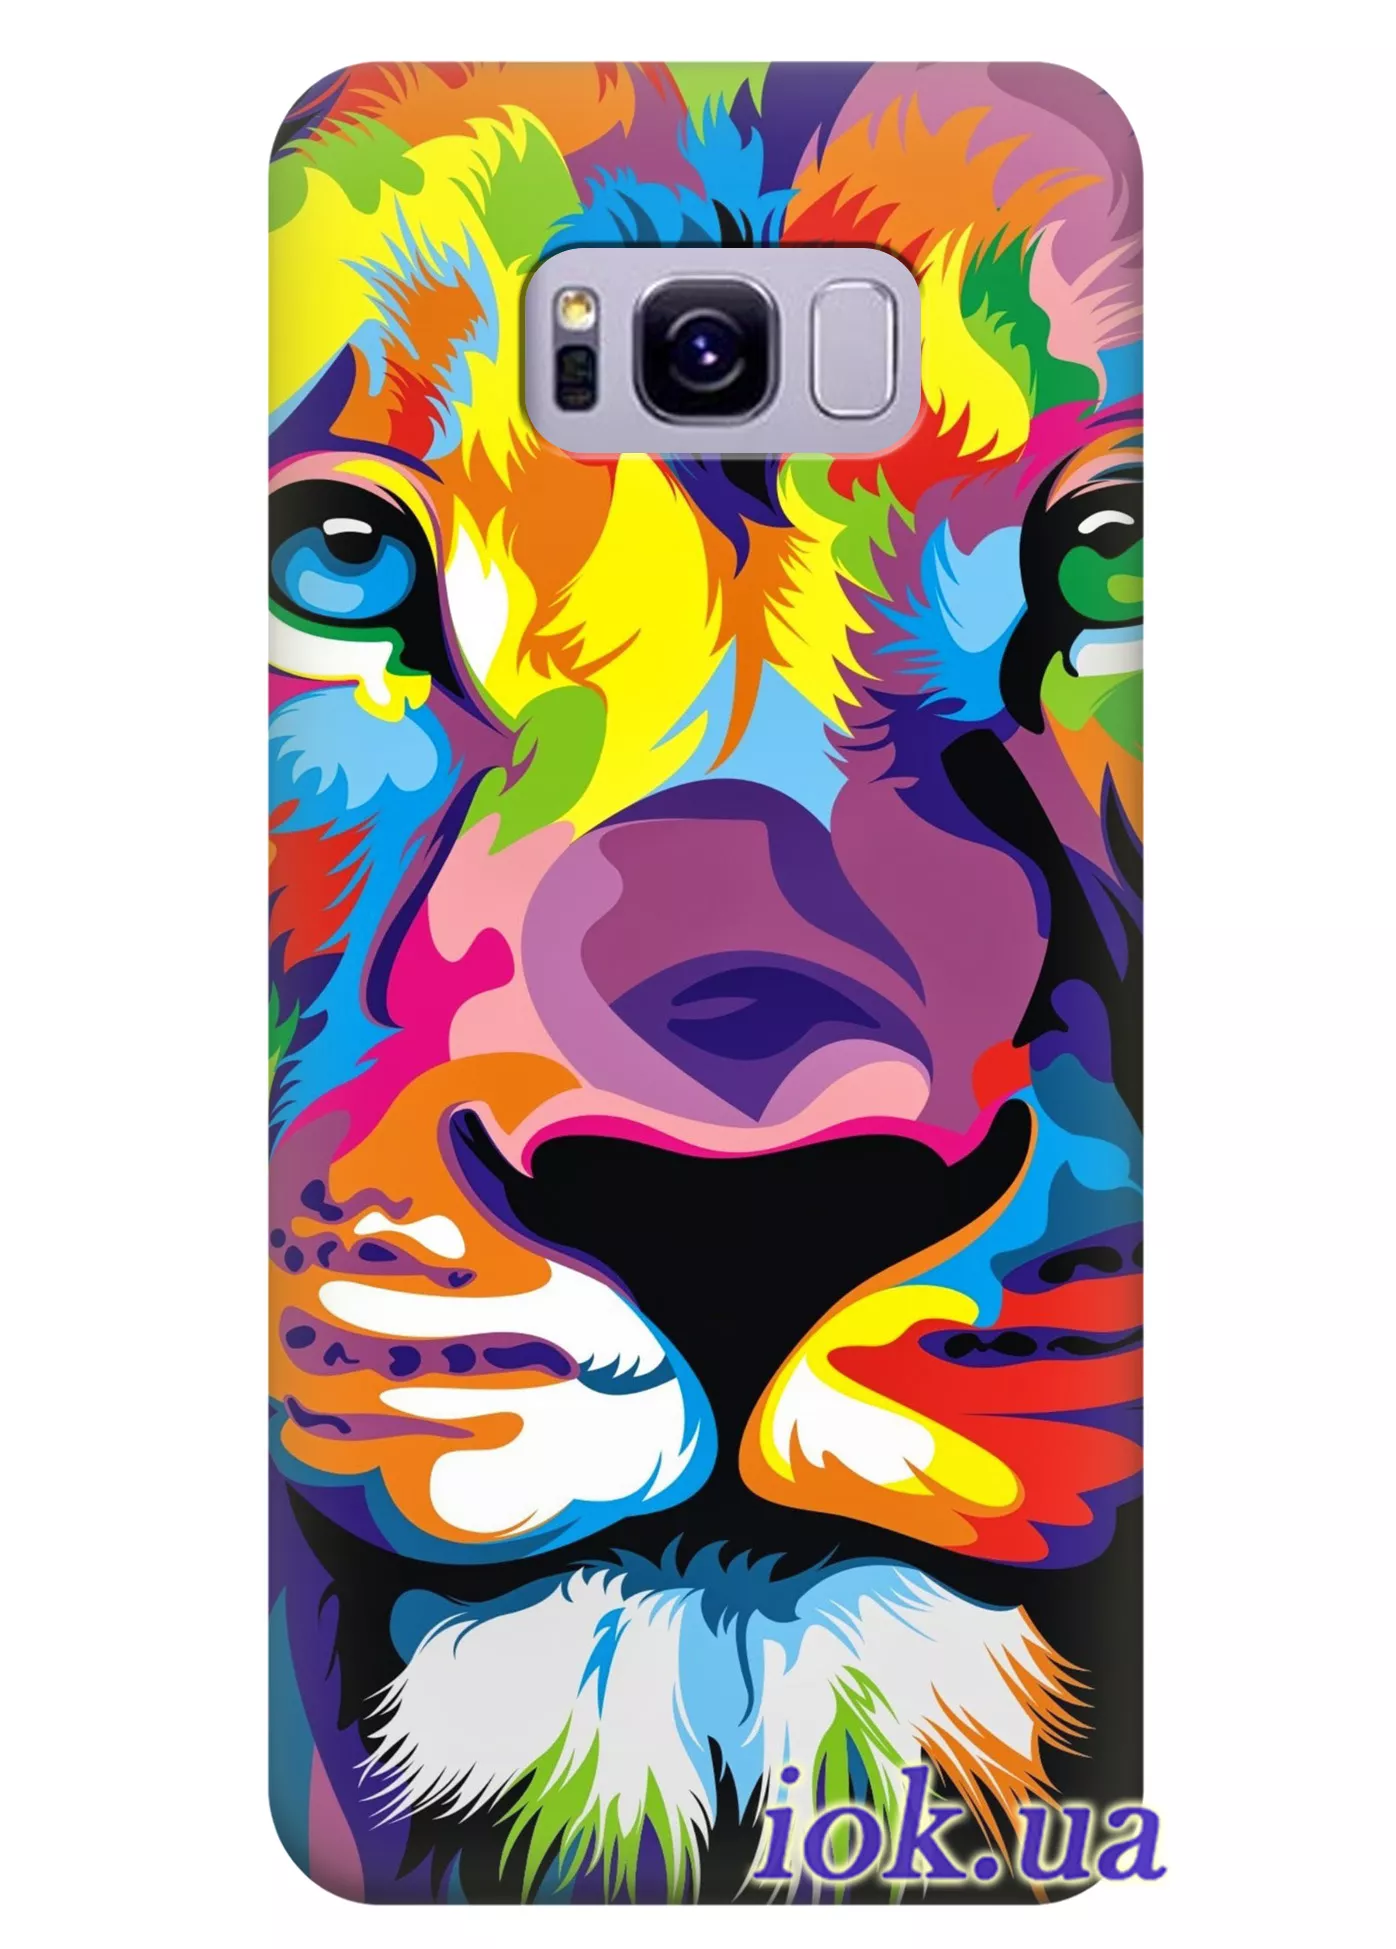 Чехол для Galaxy S8 - Цветной лев